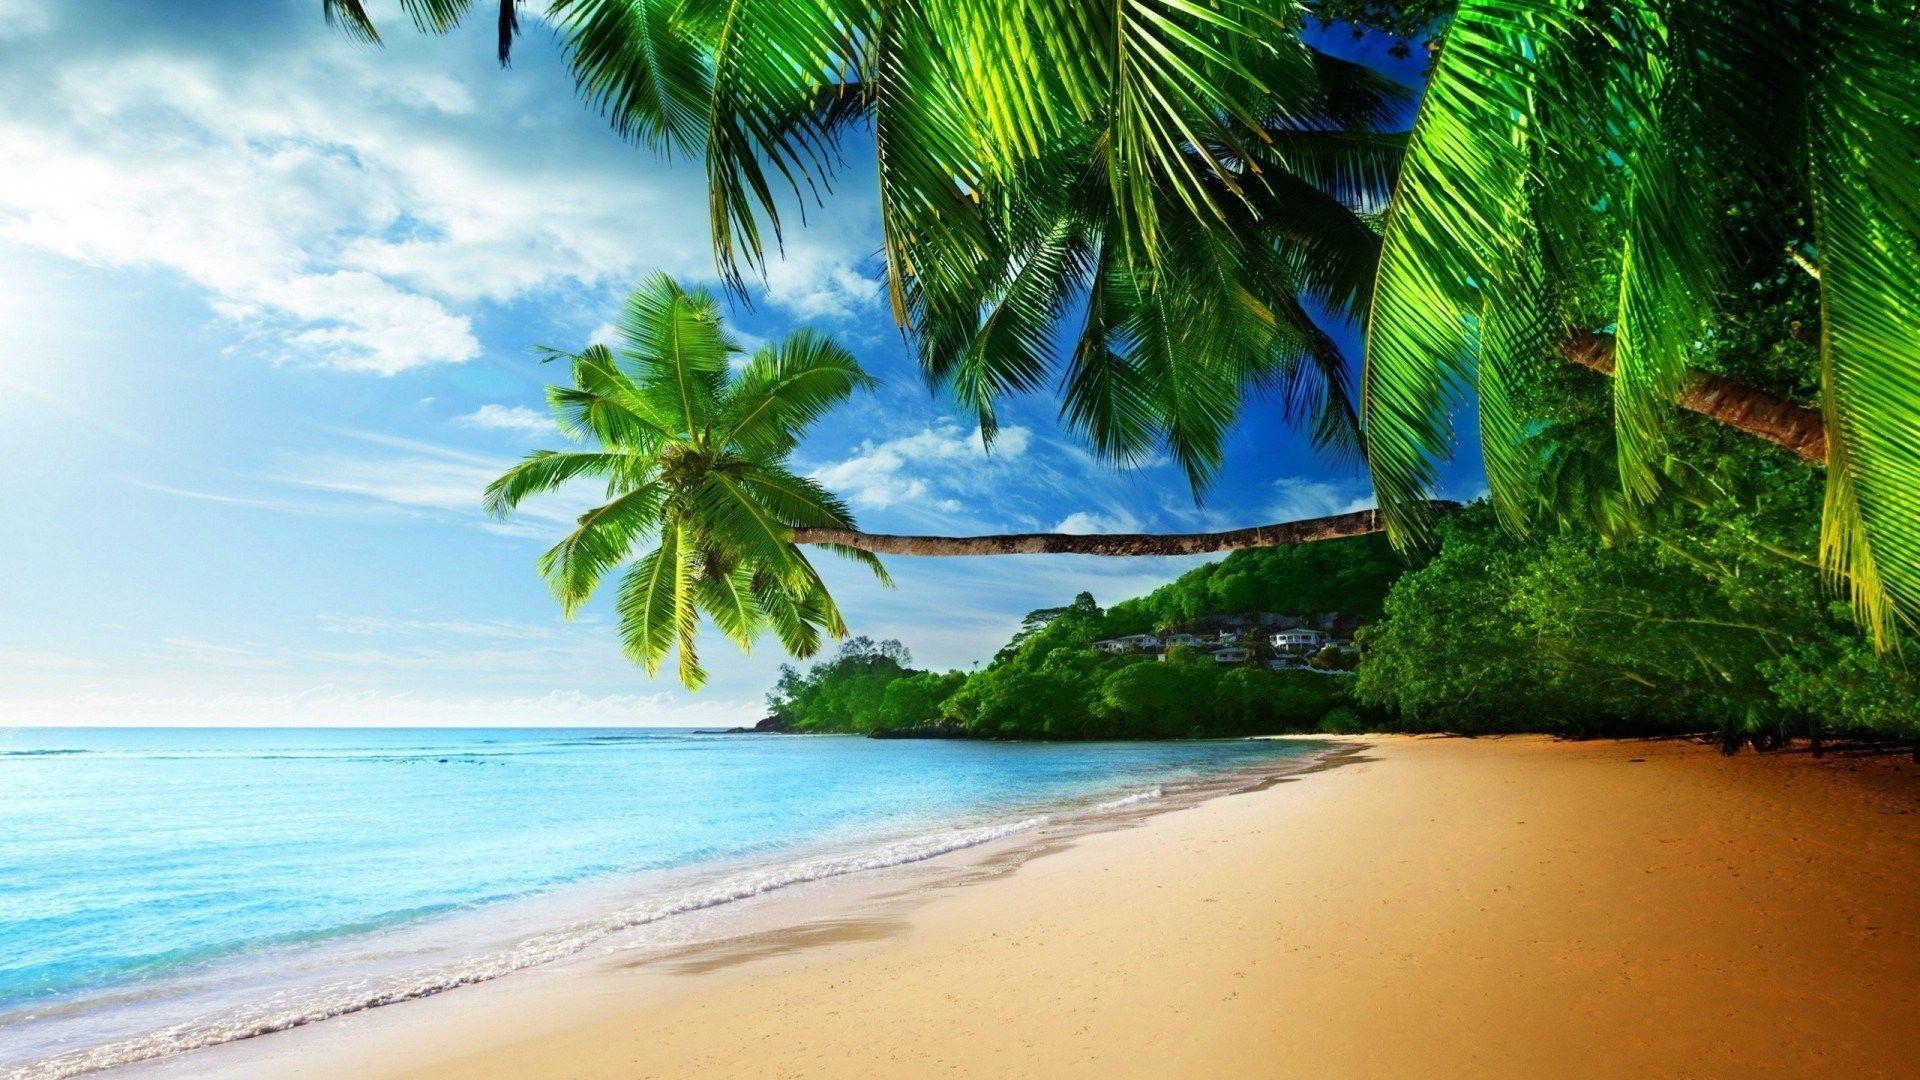 High Resolution Tropical Beach Desktop Wallpaper - Rehare